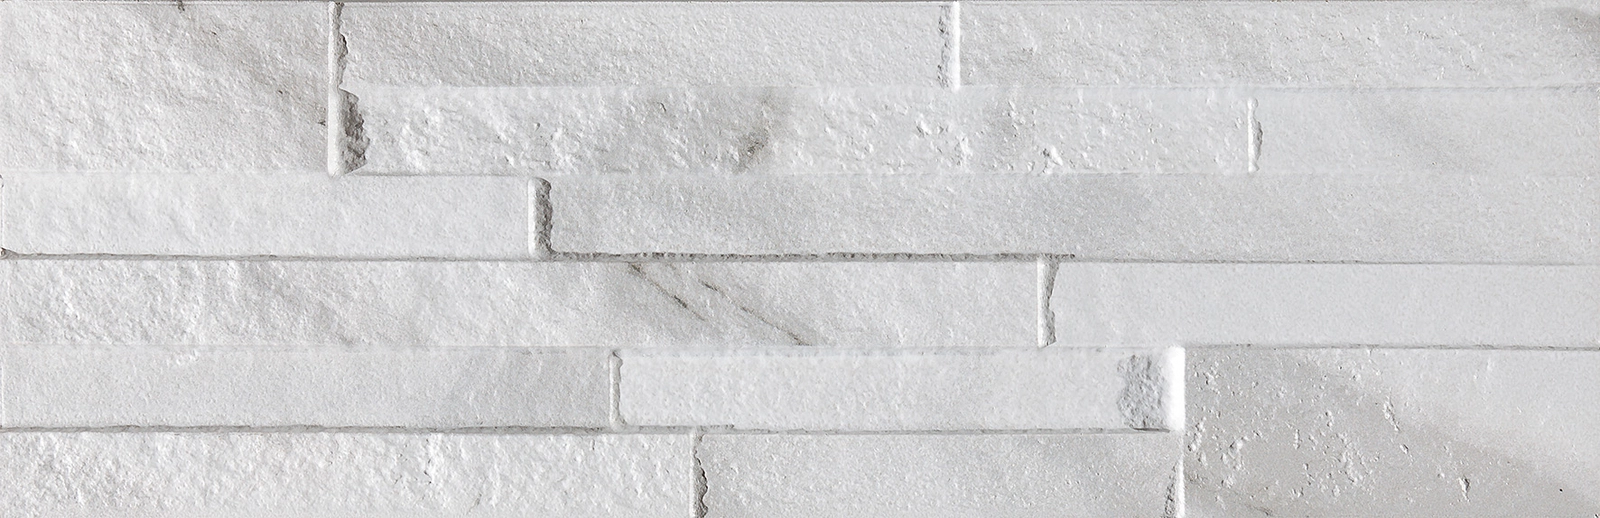 Obklad matný Bl-ock Carrara 16,3x51,7